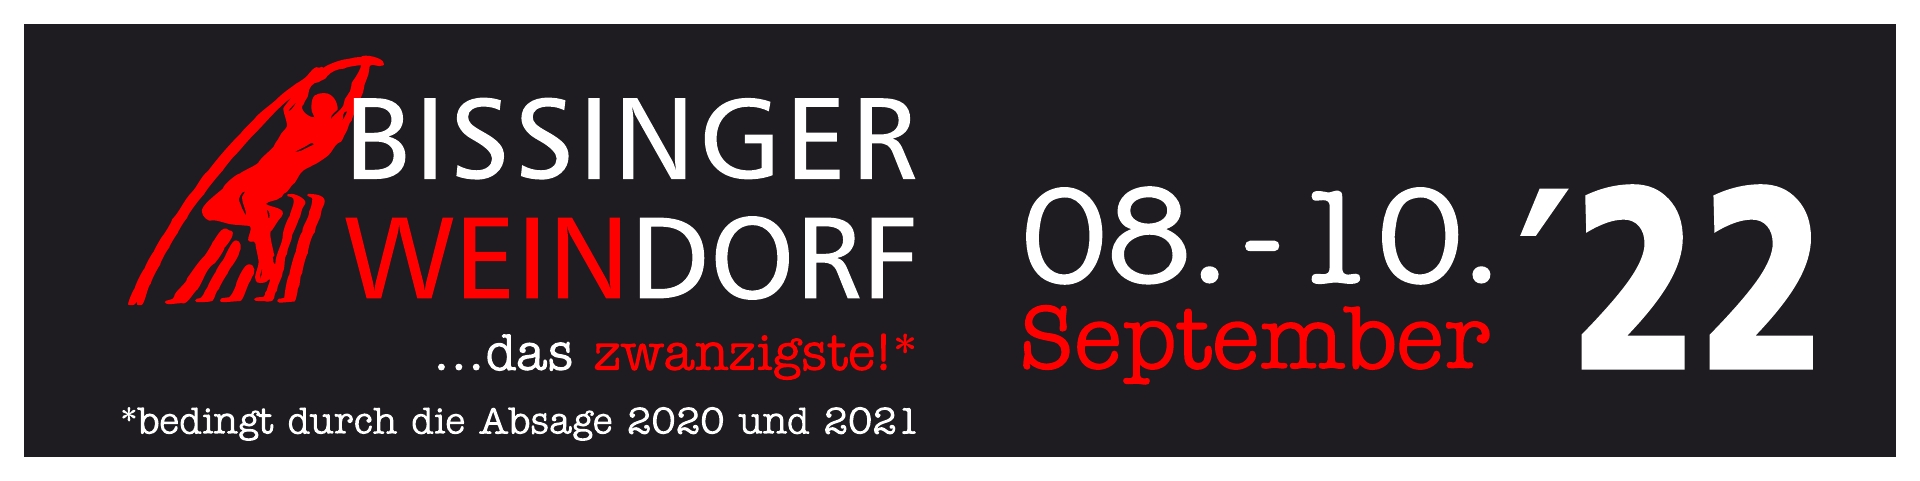 20. Bissinger Weindorf  vom 08. - 10. September am Bissinger Rathaus